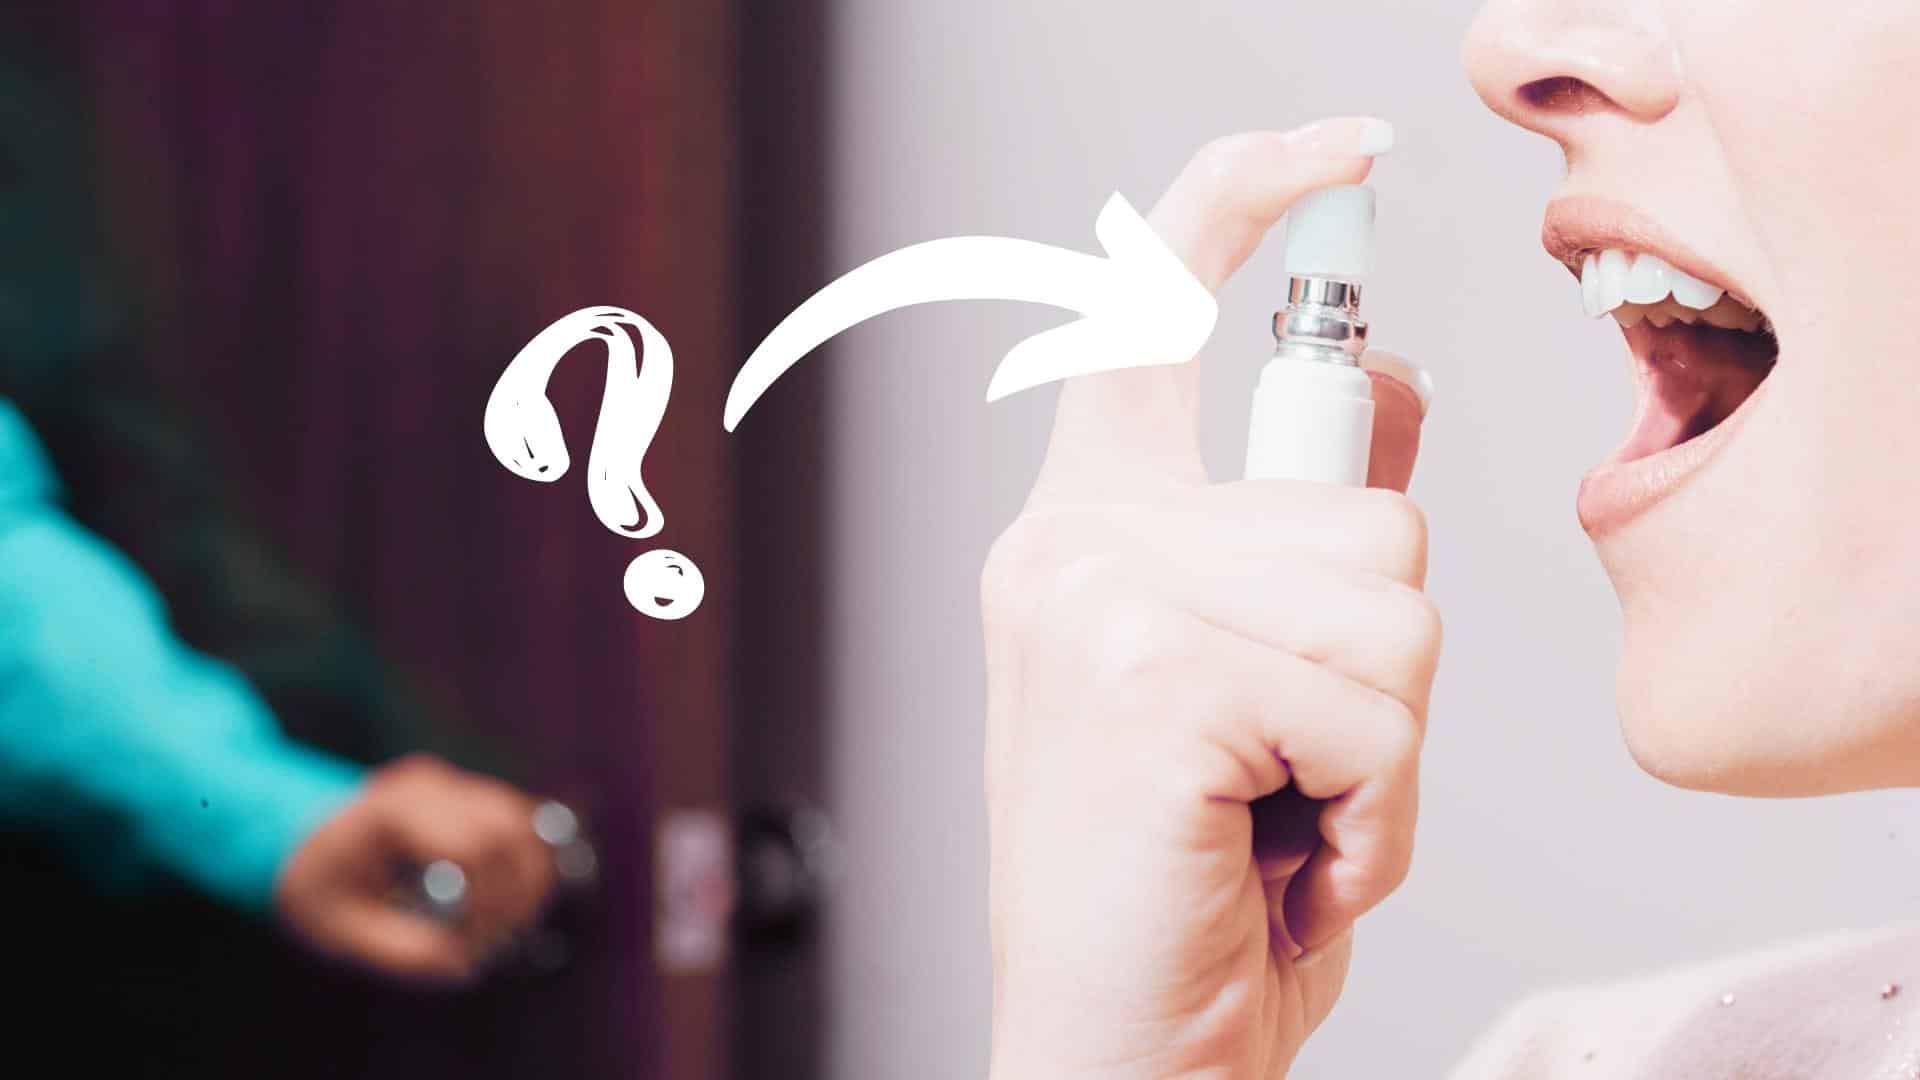 Deepthroat Spray: Is it Safe?